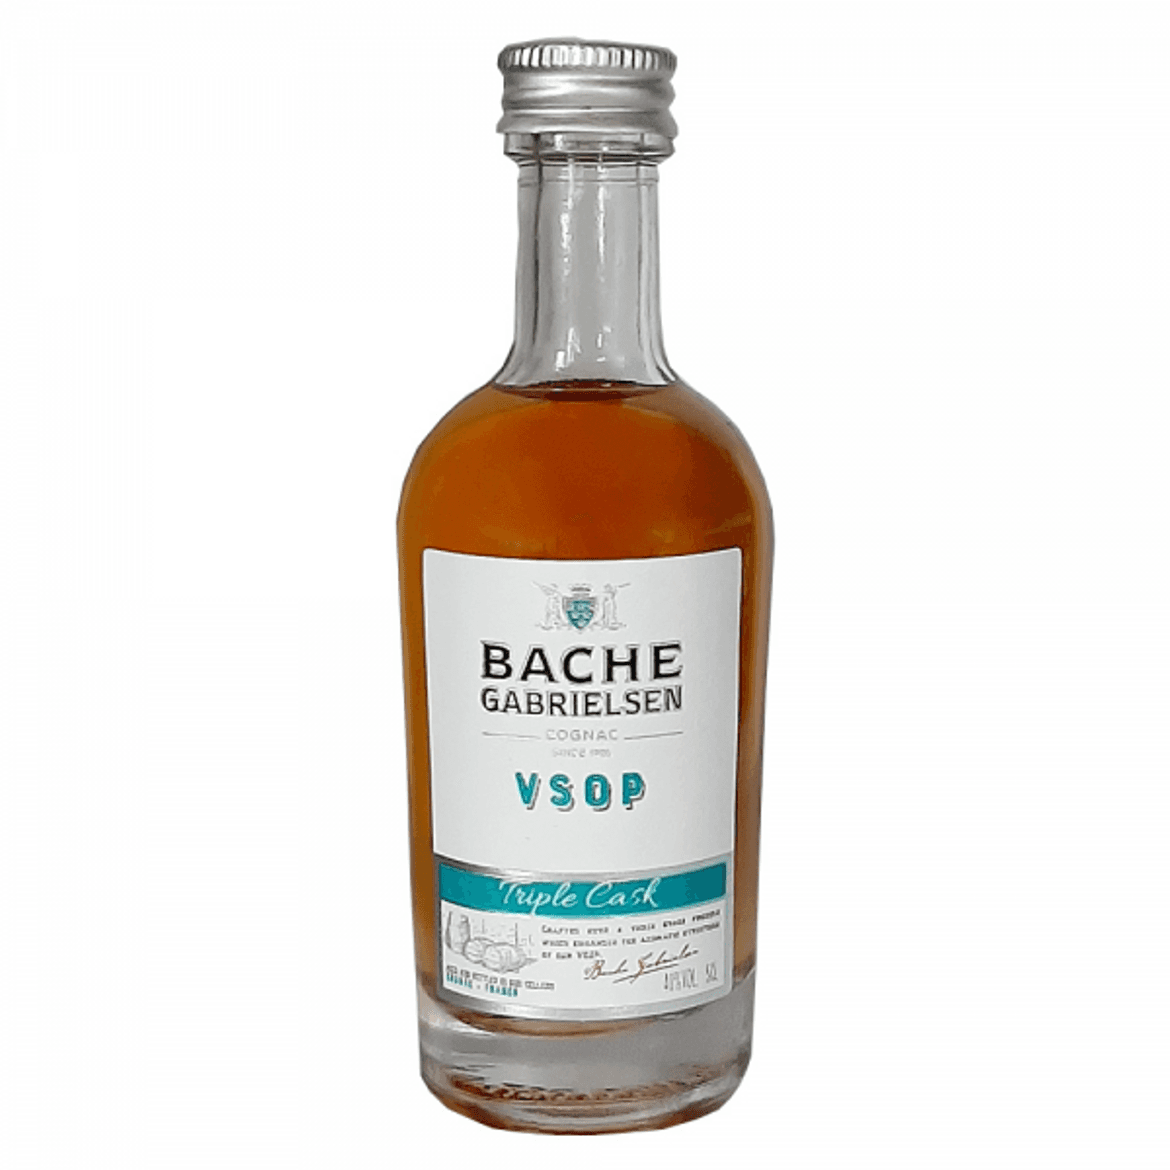 Bache-Gabrielsen VSOP Triple Cask cognac mini 40%